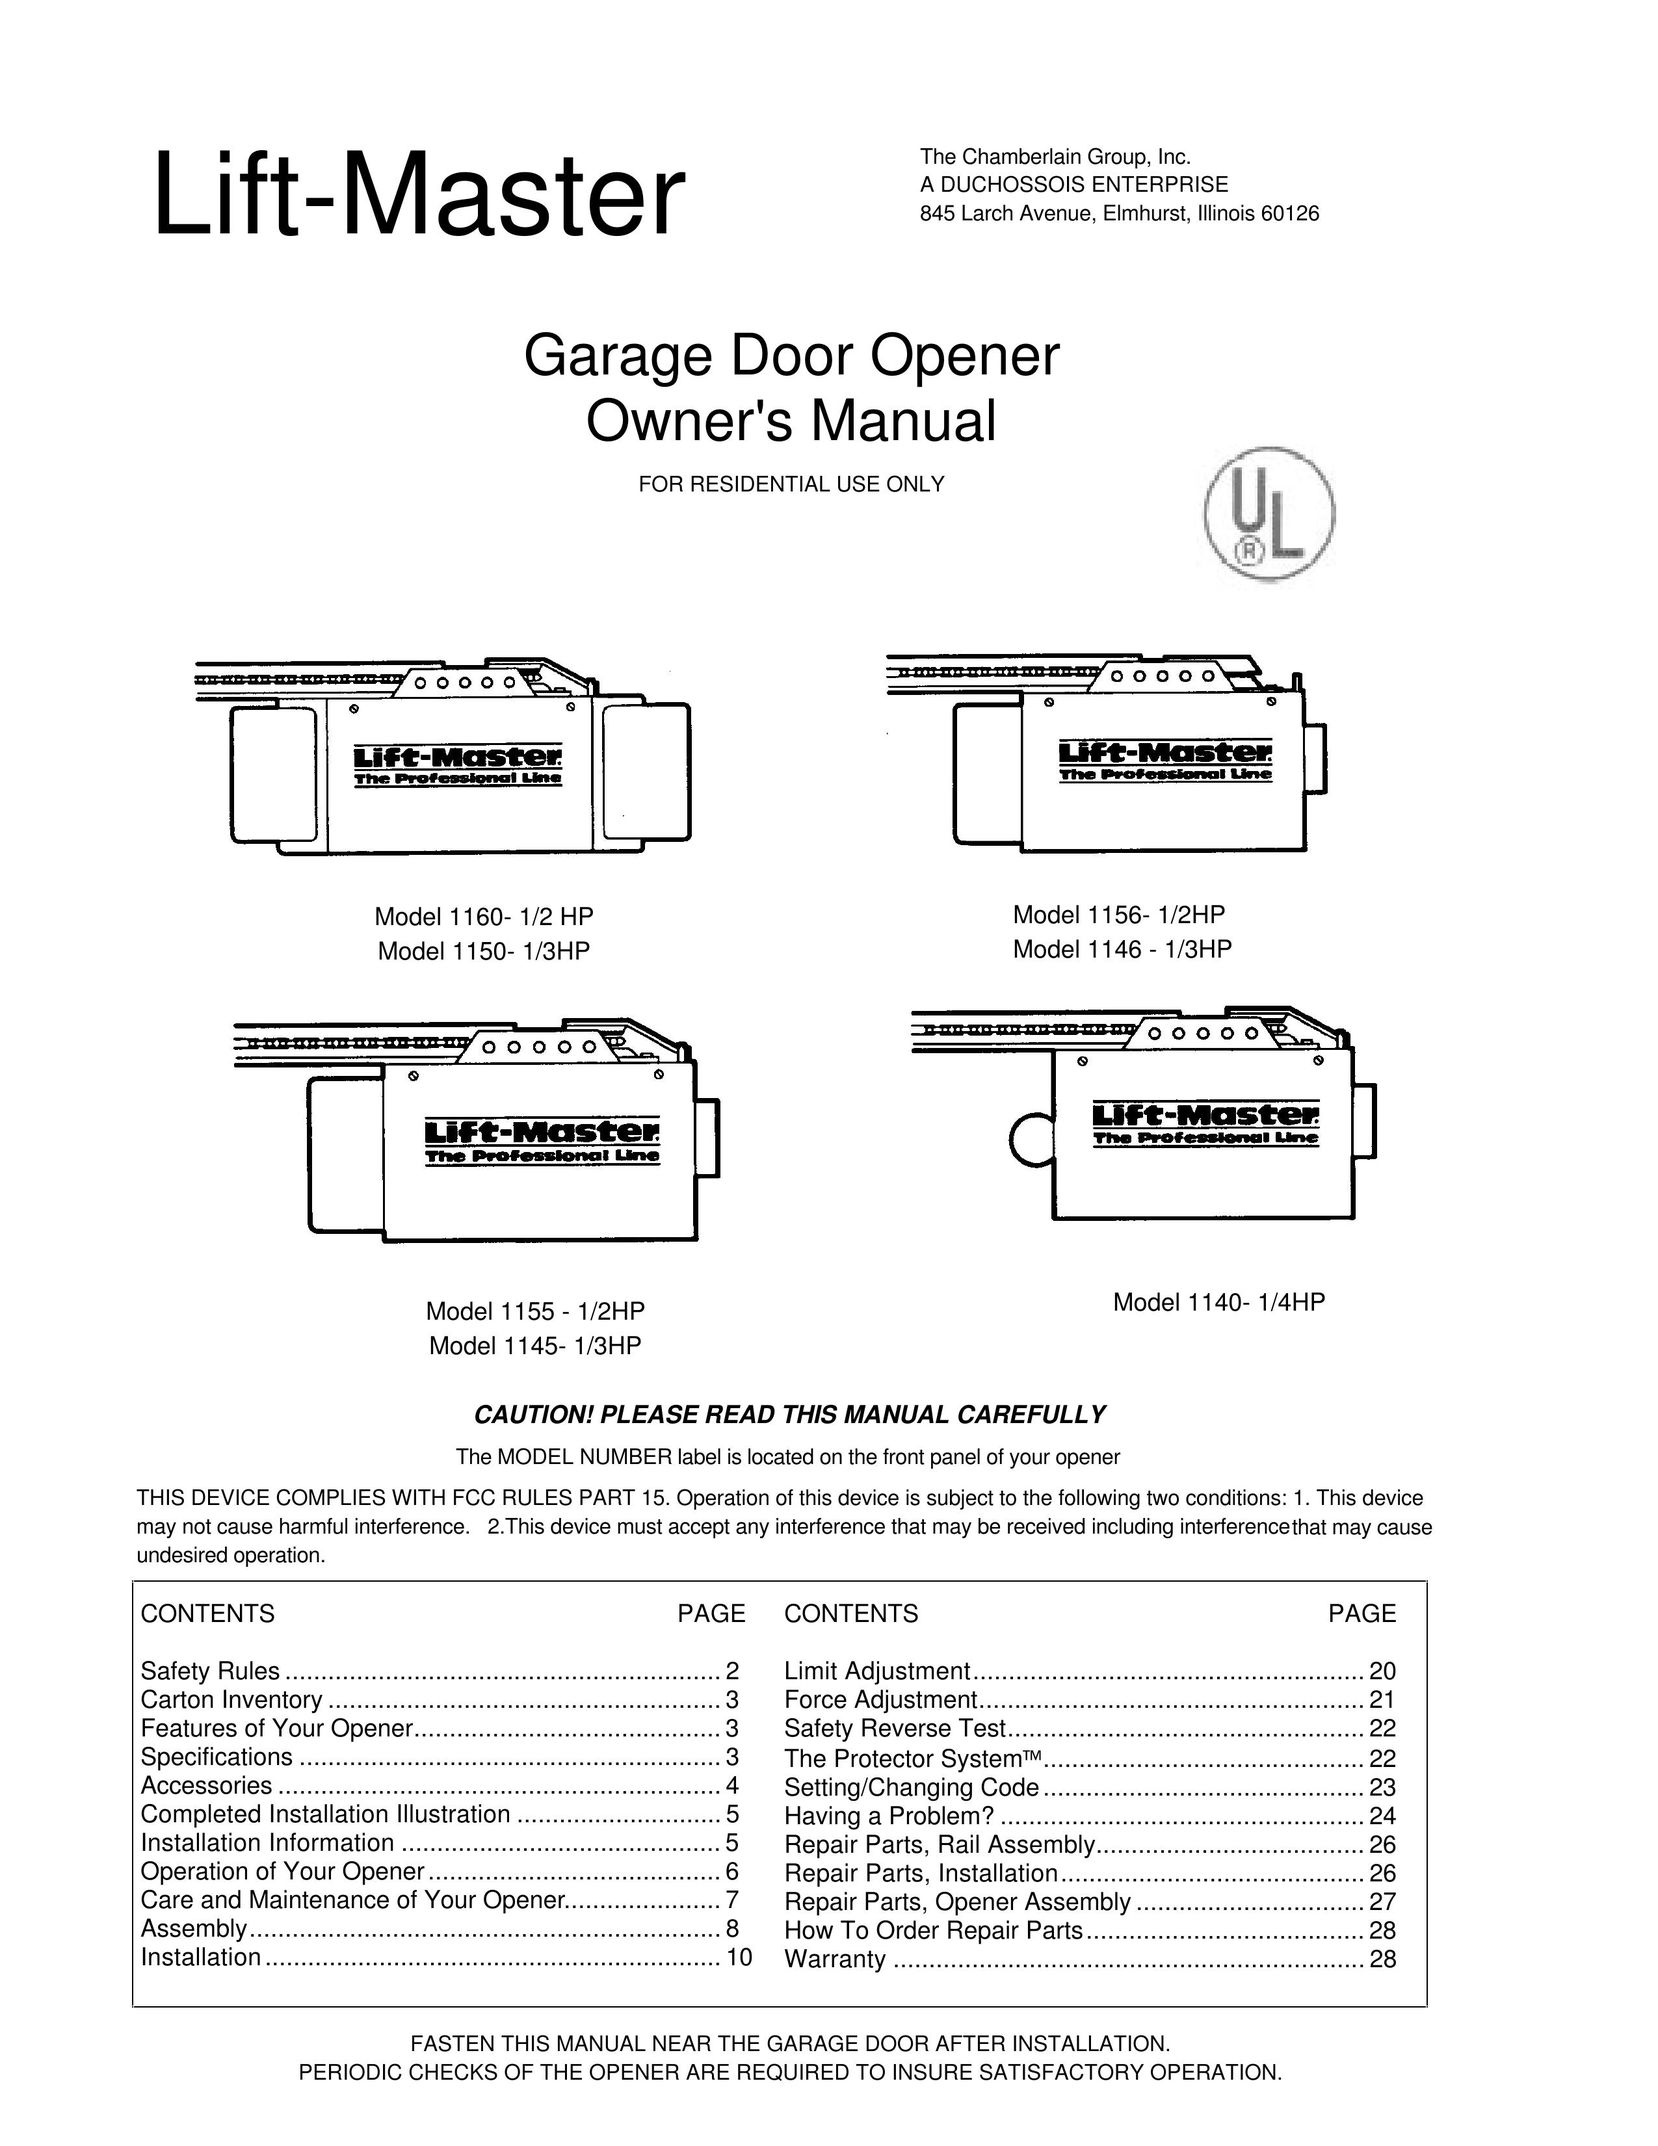 Chamberlain 1160- 1/2 HP Garage Door Opener User Manual